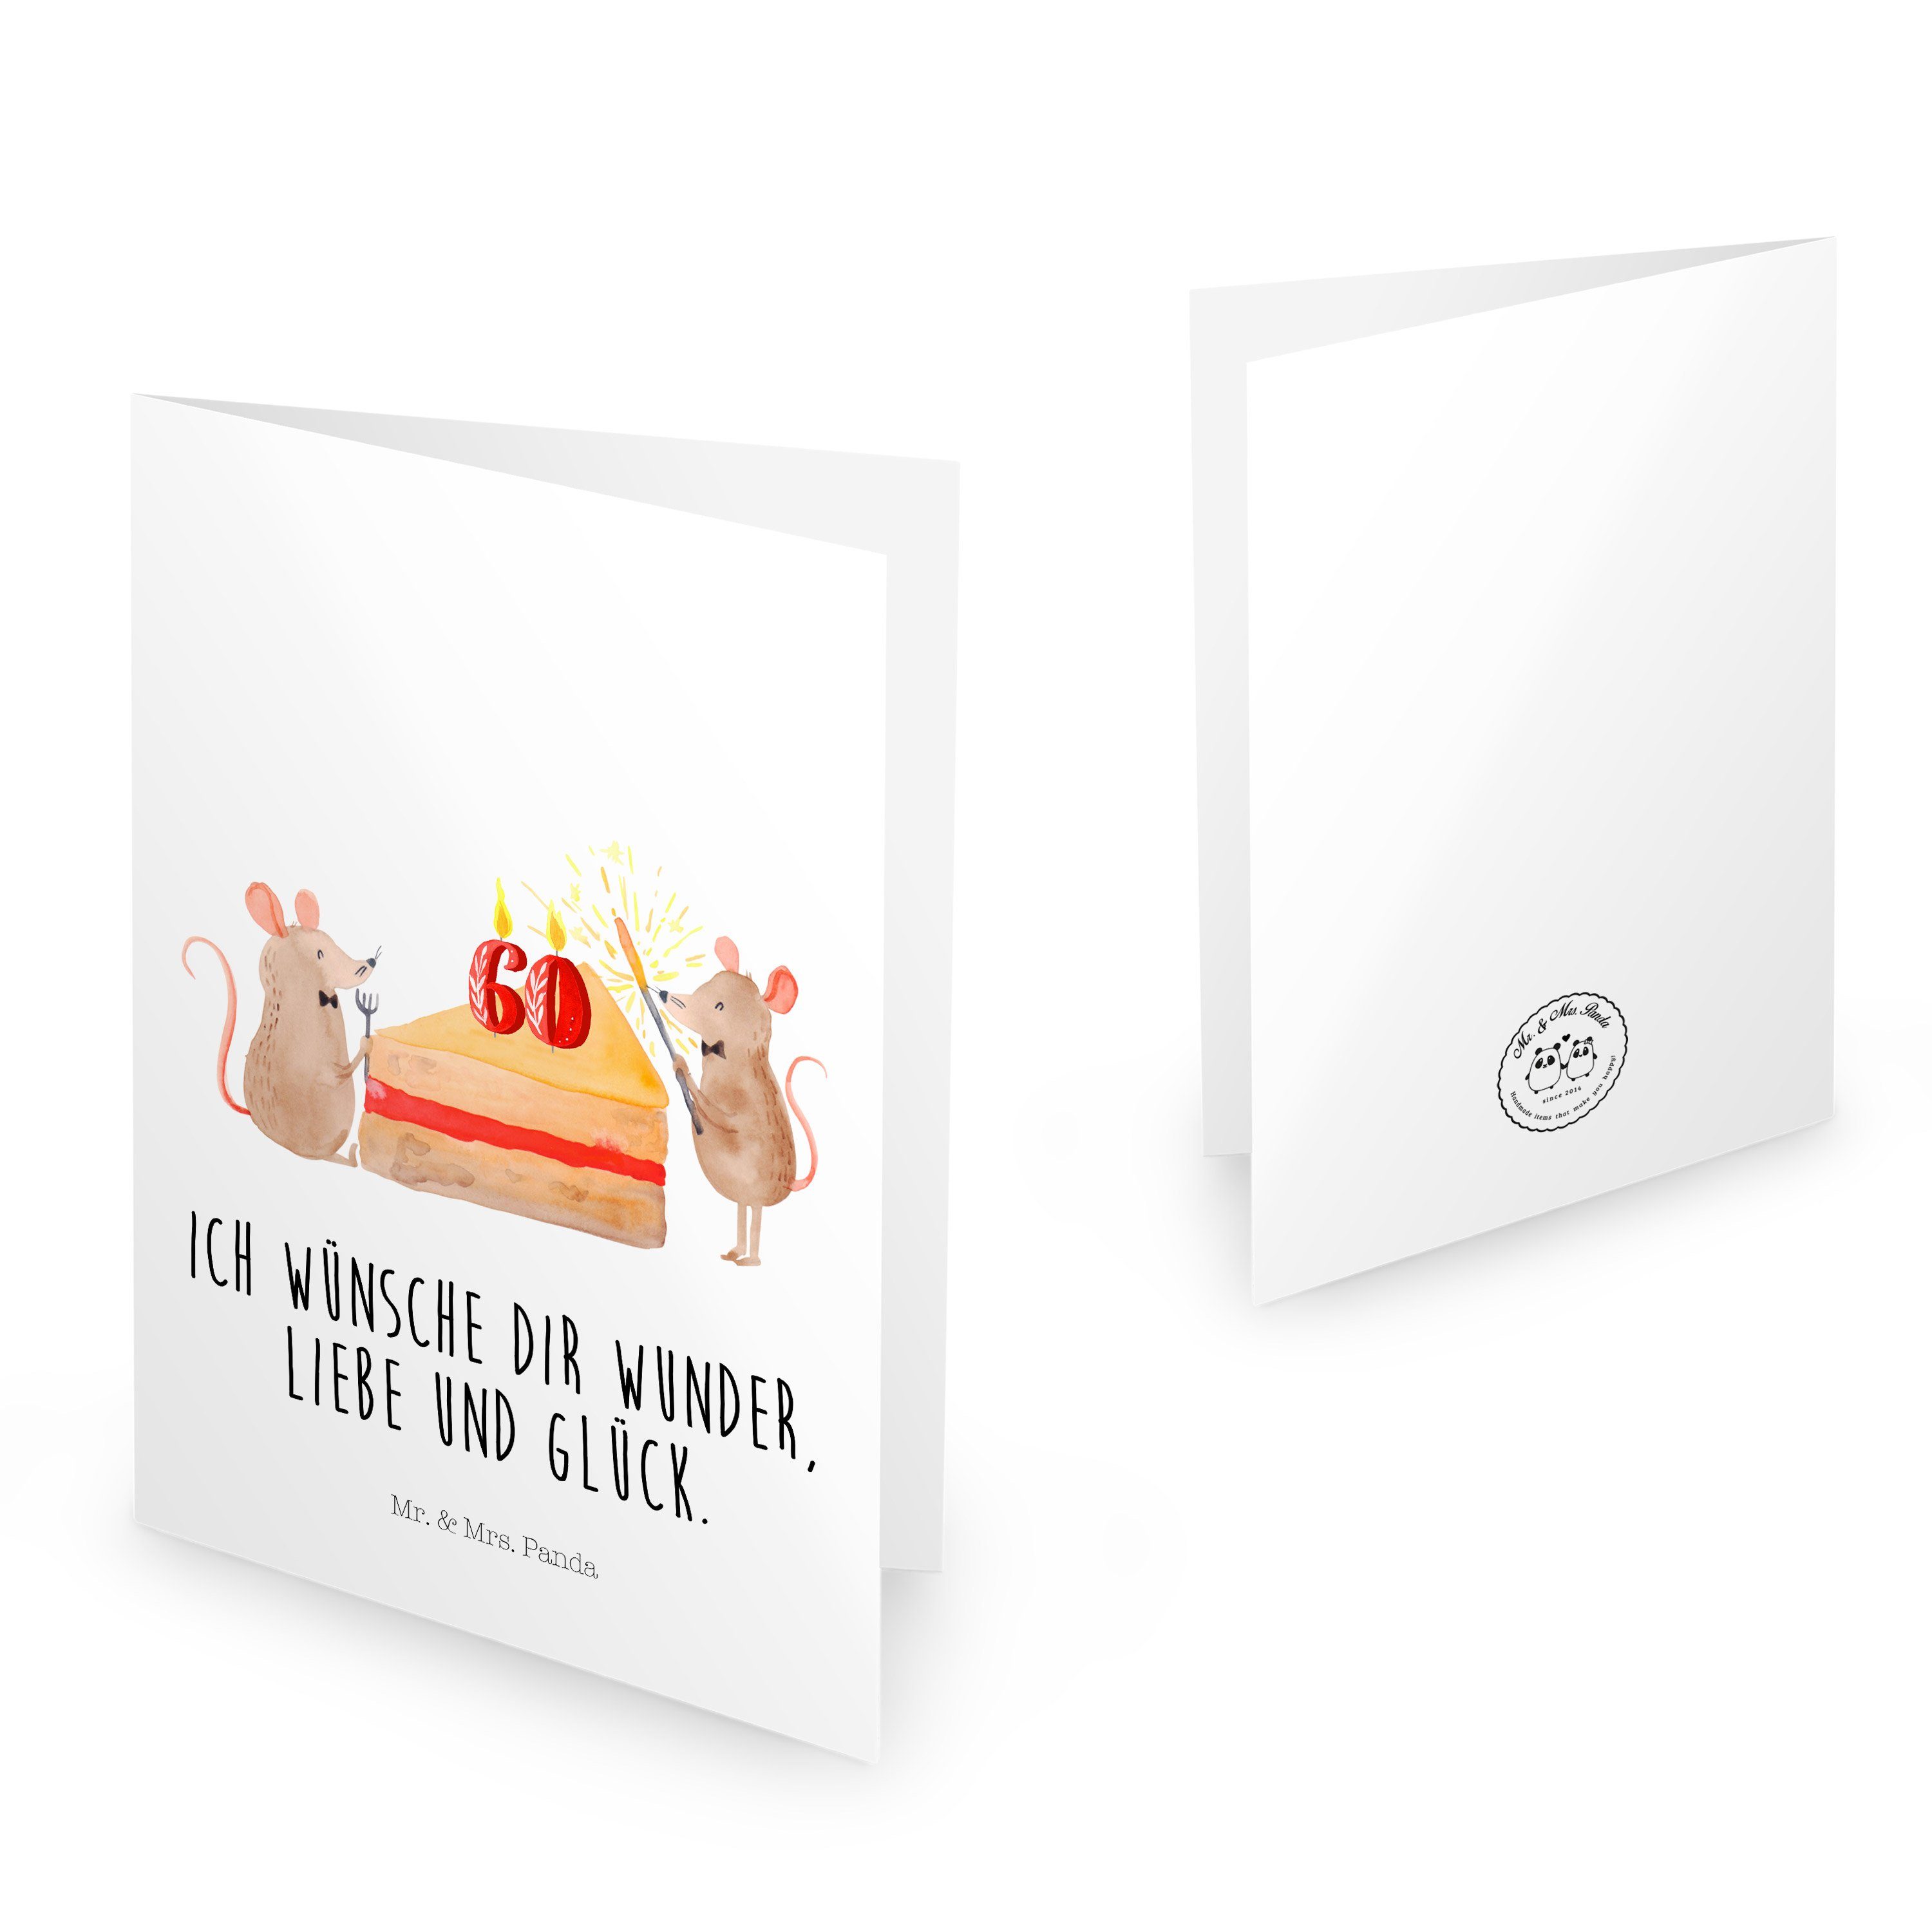 Geburtstagskarten Geschenk, Mr. Weiß Geburtstag Mrs. Geburtstagskart & 60. Torte, Mäuse - Panda - Kuchen